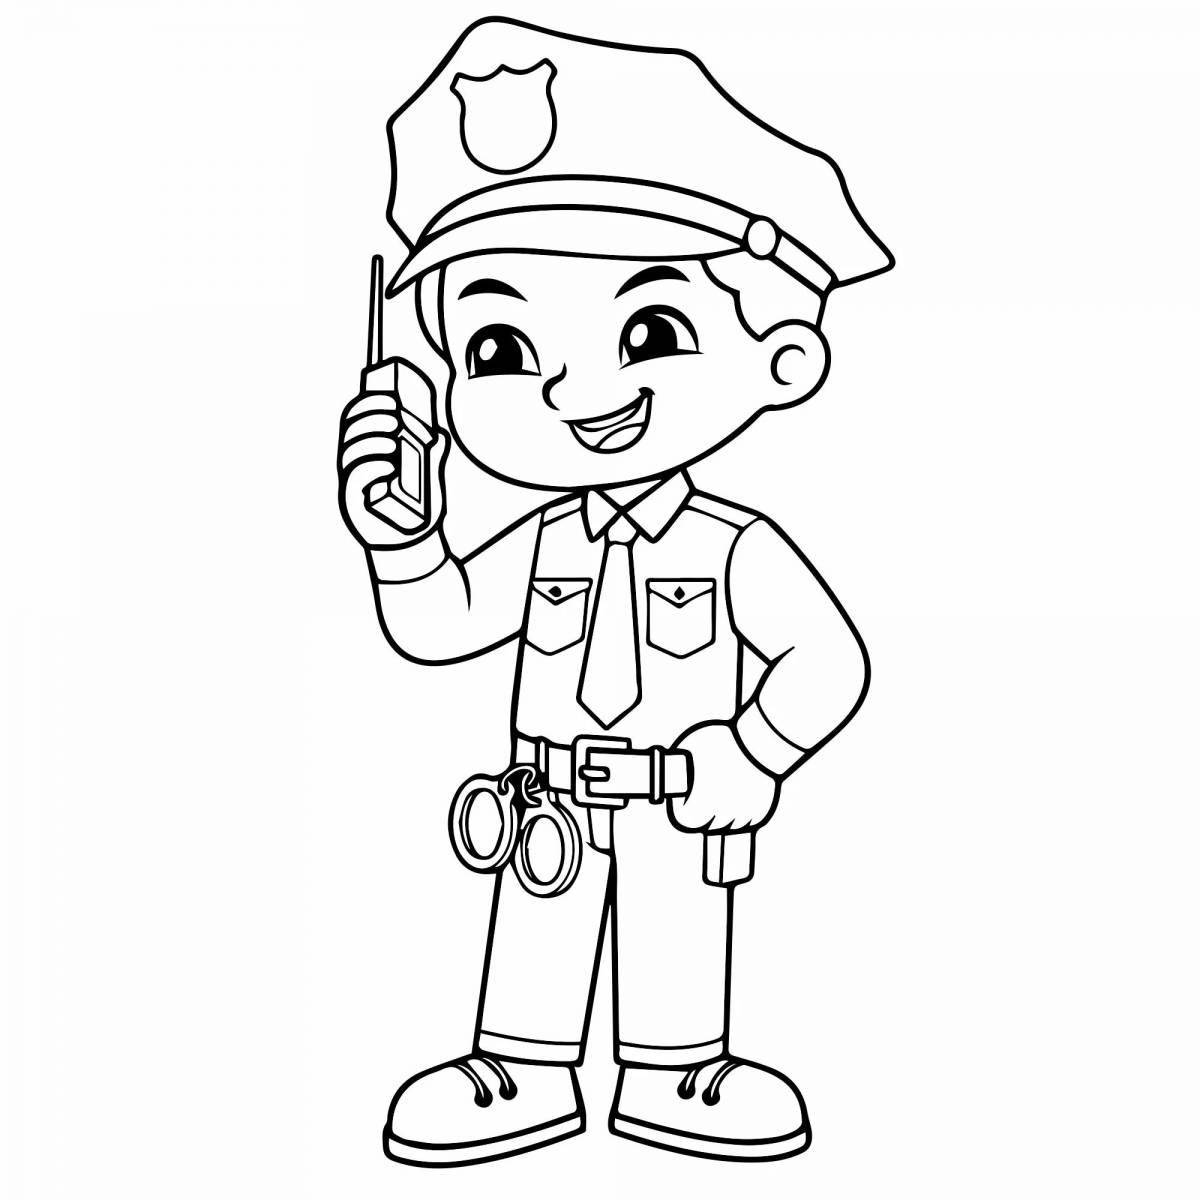 Раскраски для детей профессии милиционер